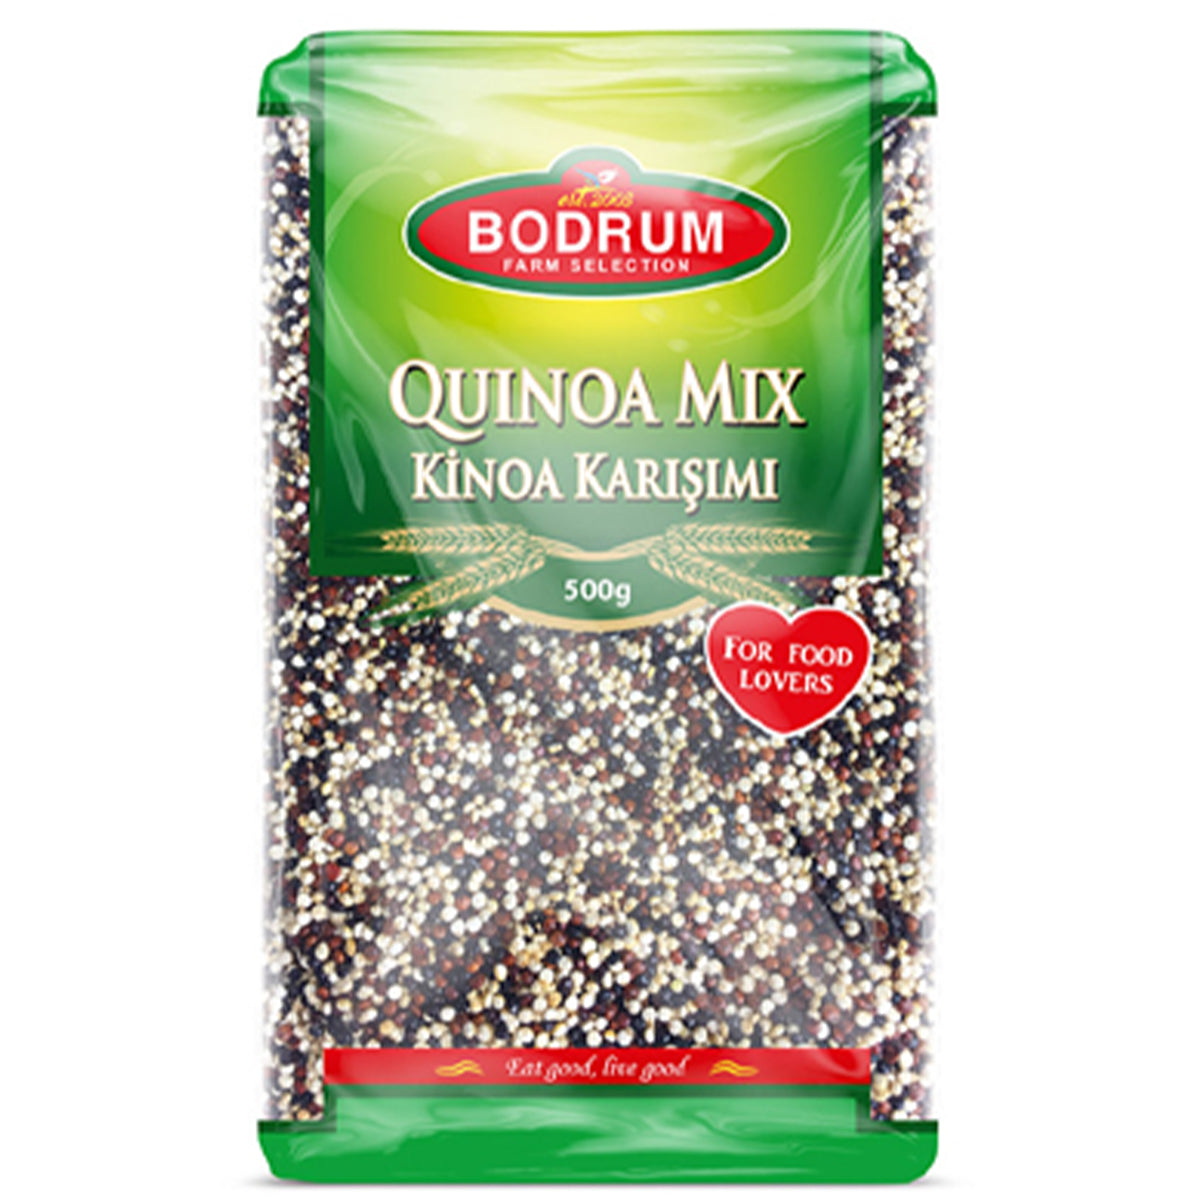 Bodrum - Quinoa Mix - 500g - Continental Food Store